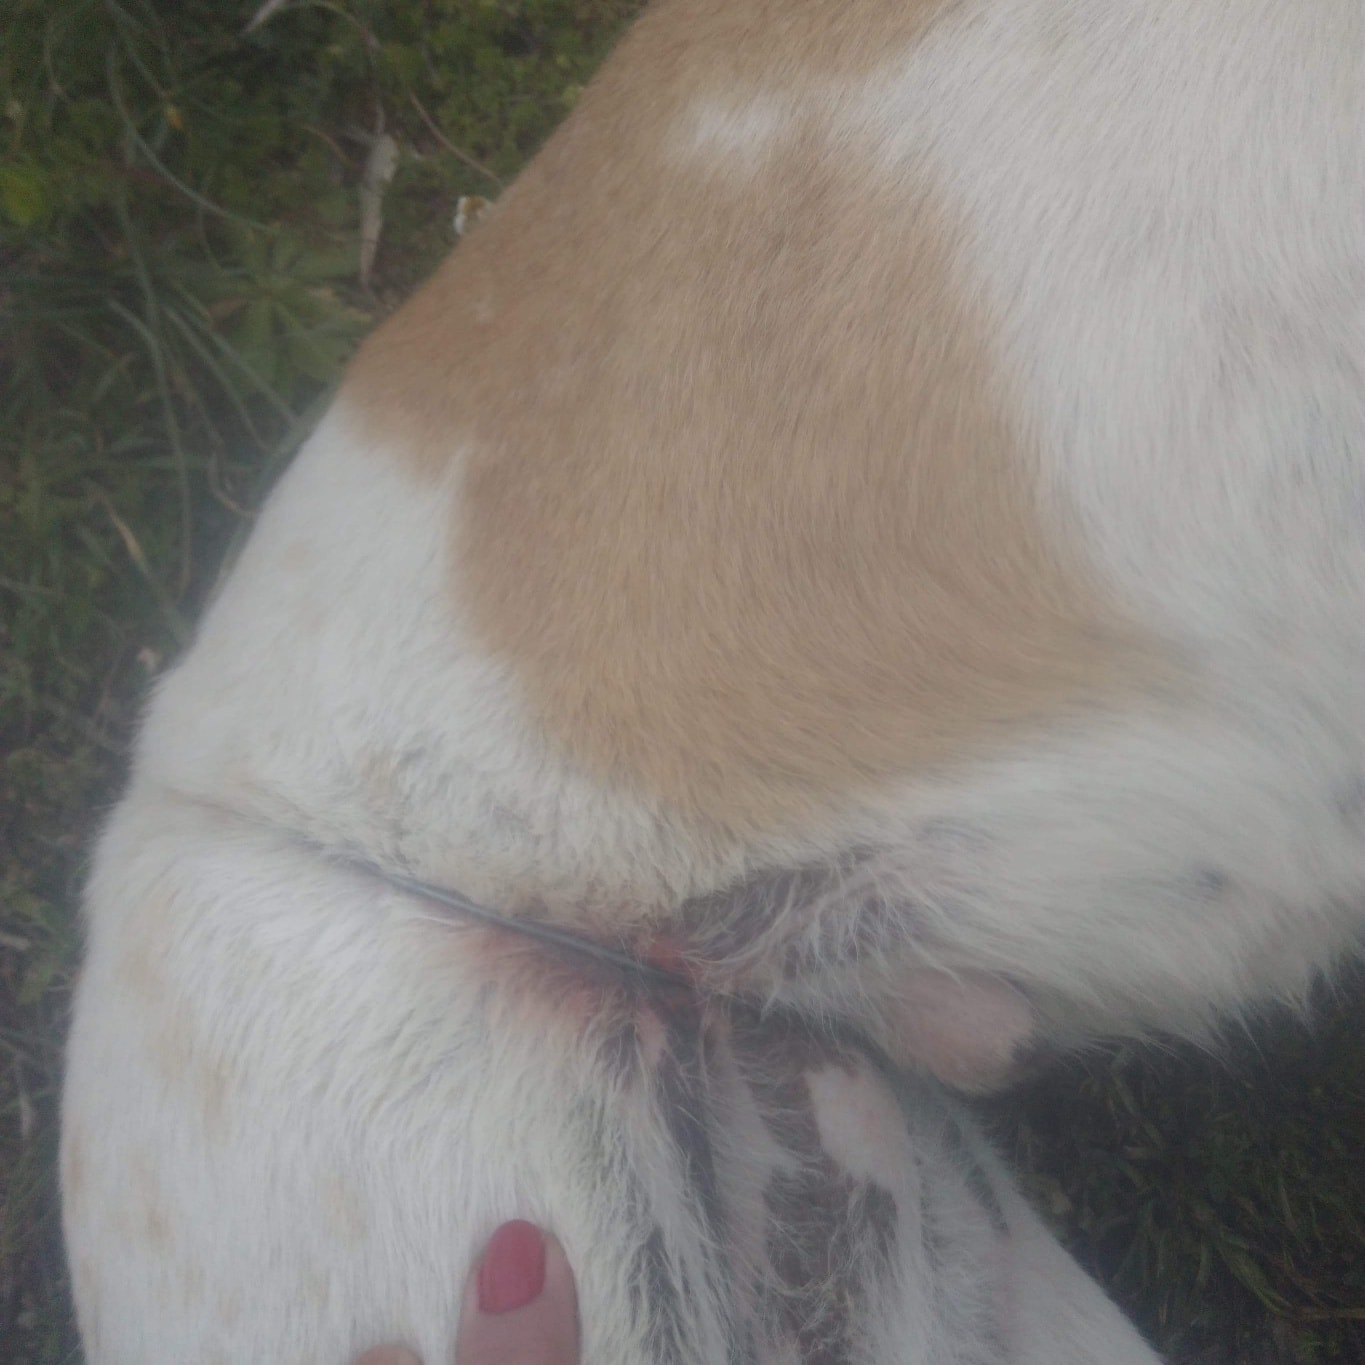 Κτηνωδία στον Βόλο: Έδεσαν με σύρμα αδέσποτο ζώο για να πεθάνει με φρικτούς πόνους (φωτο)